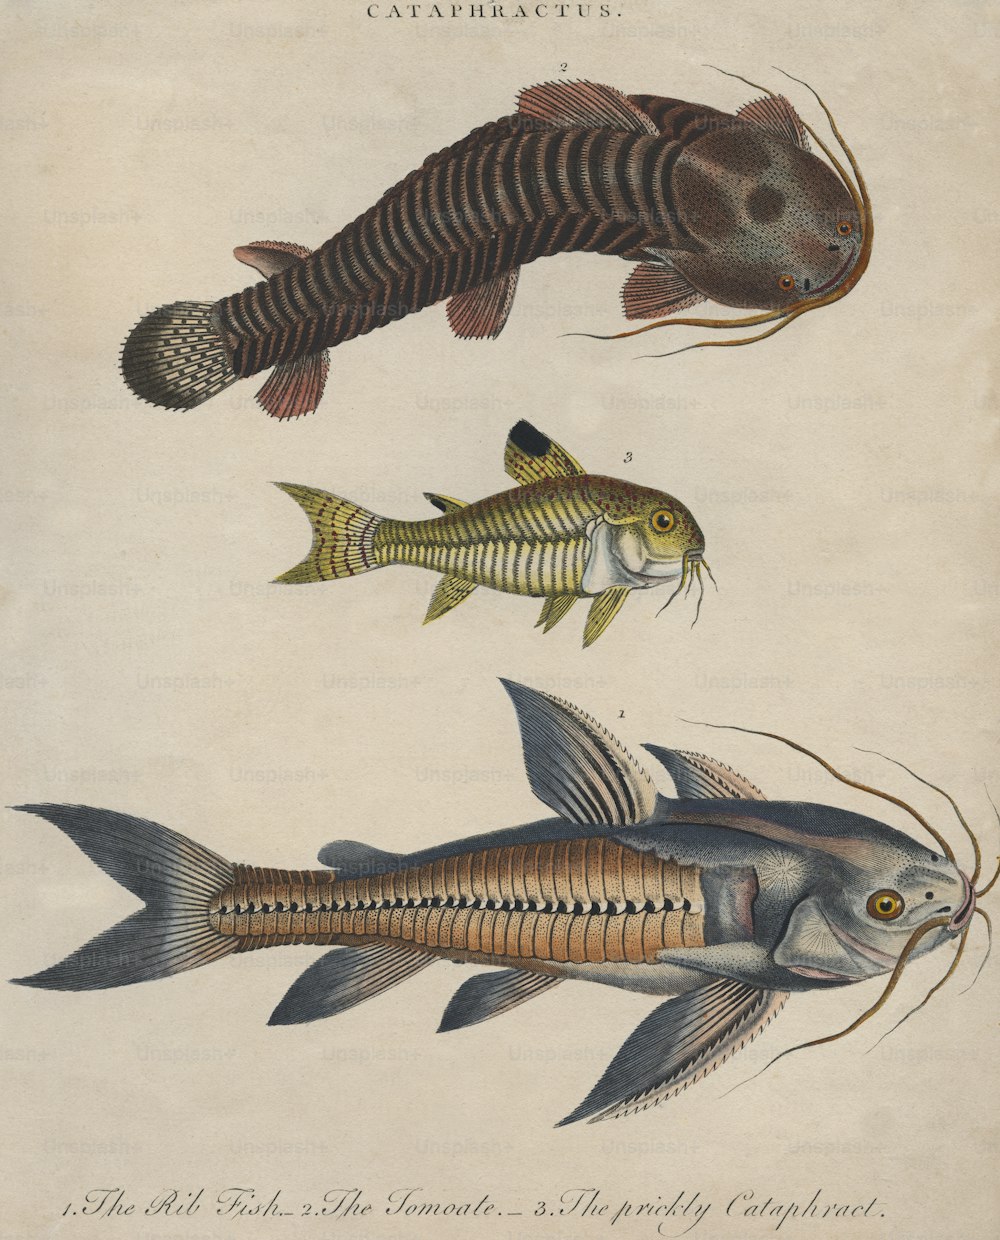 Tres especies de bagres, alrededor de 1800. De arriba a abajo, un tomoate, un catafracto espinoso y un pez costilla. Grabado de J. Pass. (Foto de Hulton Archive/Getty Images)